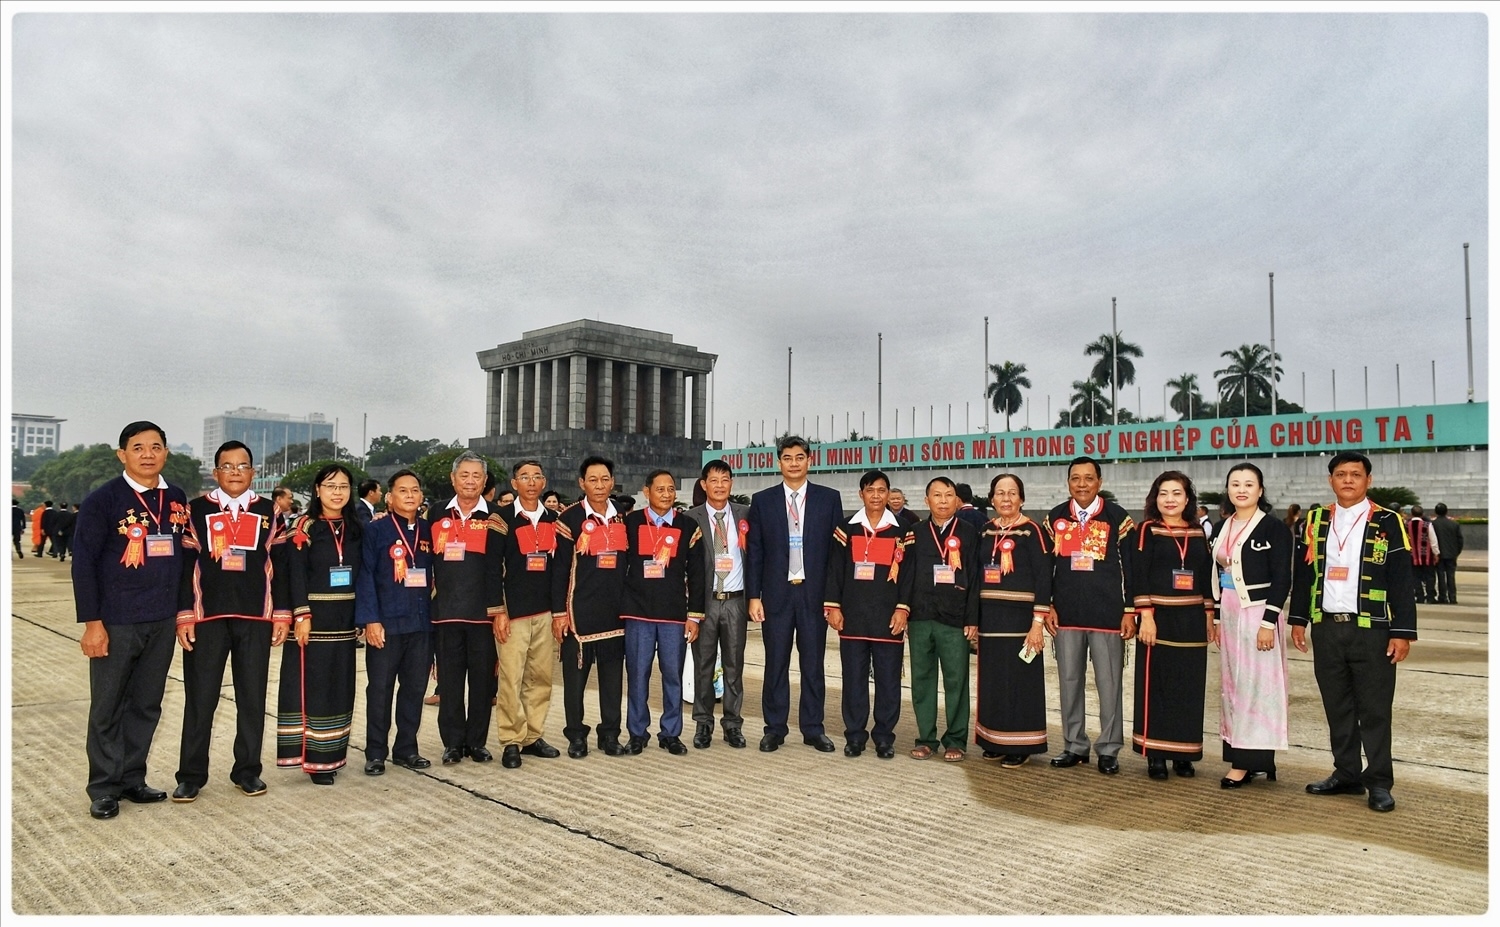 Thứ trưởng, Phó Chủ nhiệm UBDT Y Vinh Tơr chụp ảnh lưu niệm cùng các đại biểu trước Lăng Chủ tịch Hồ Chí Minh